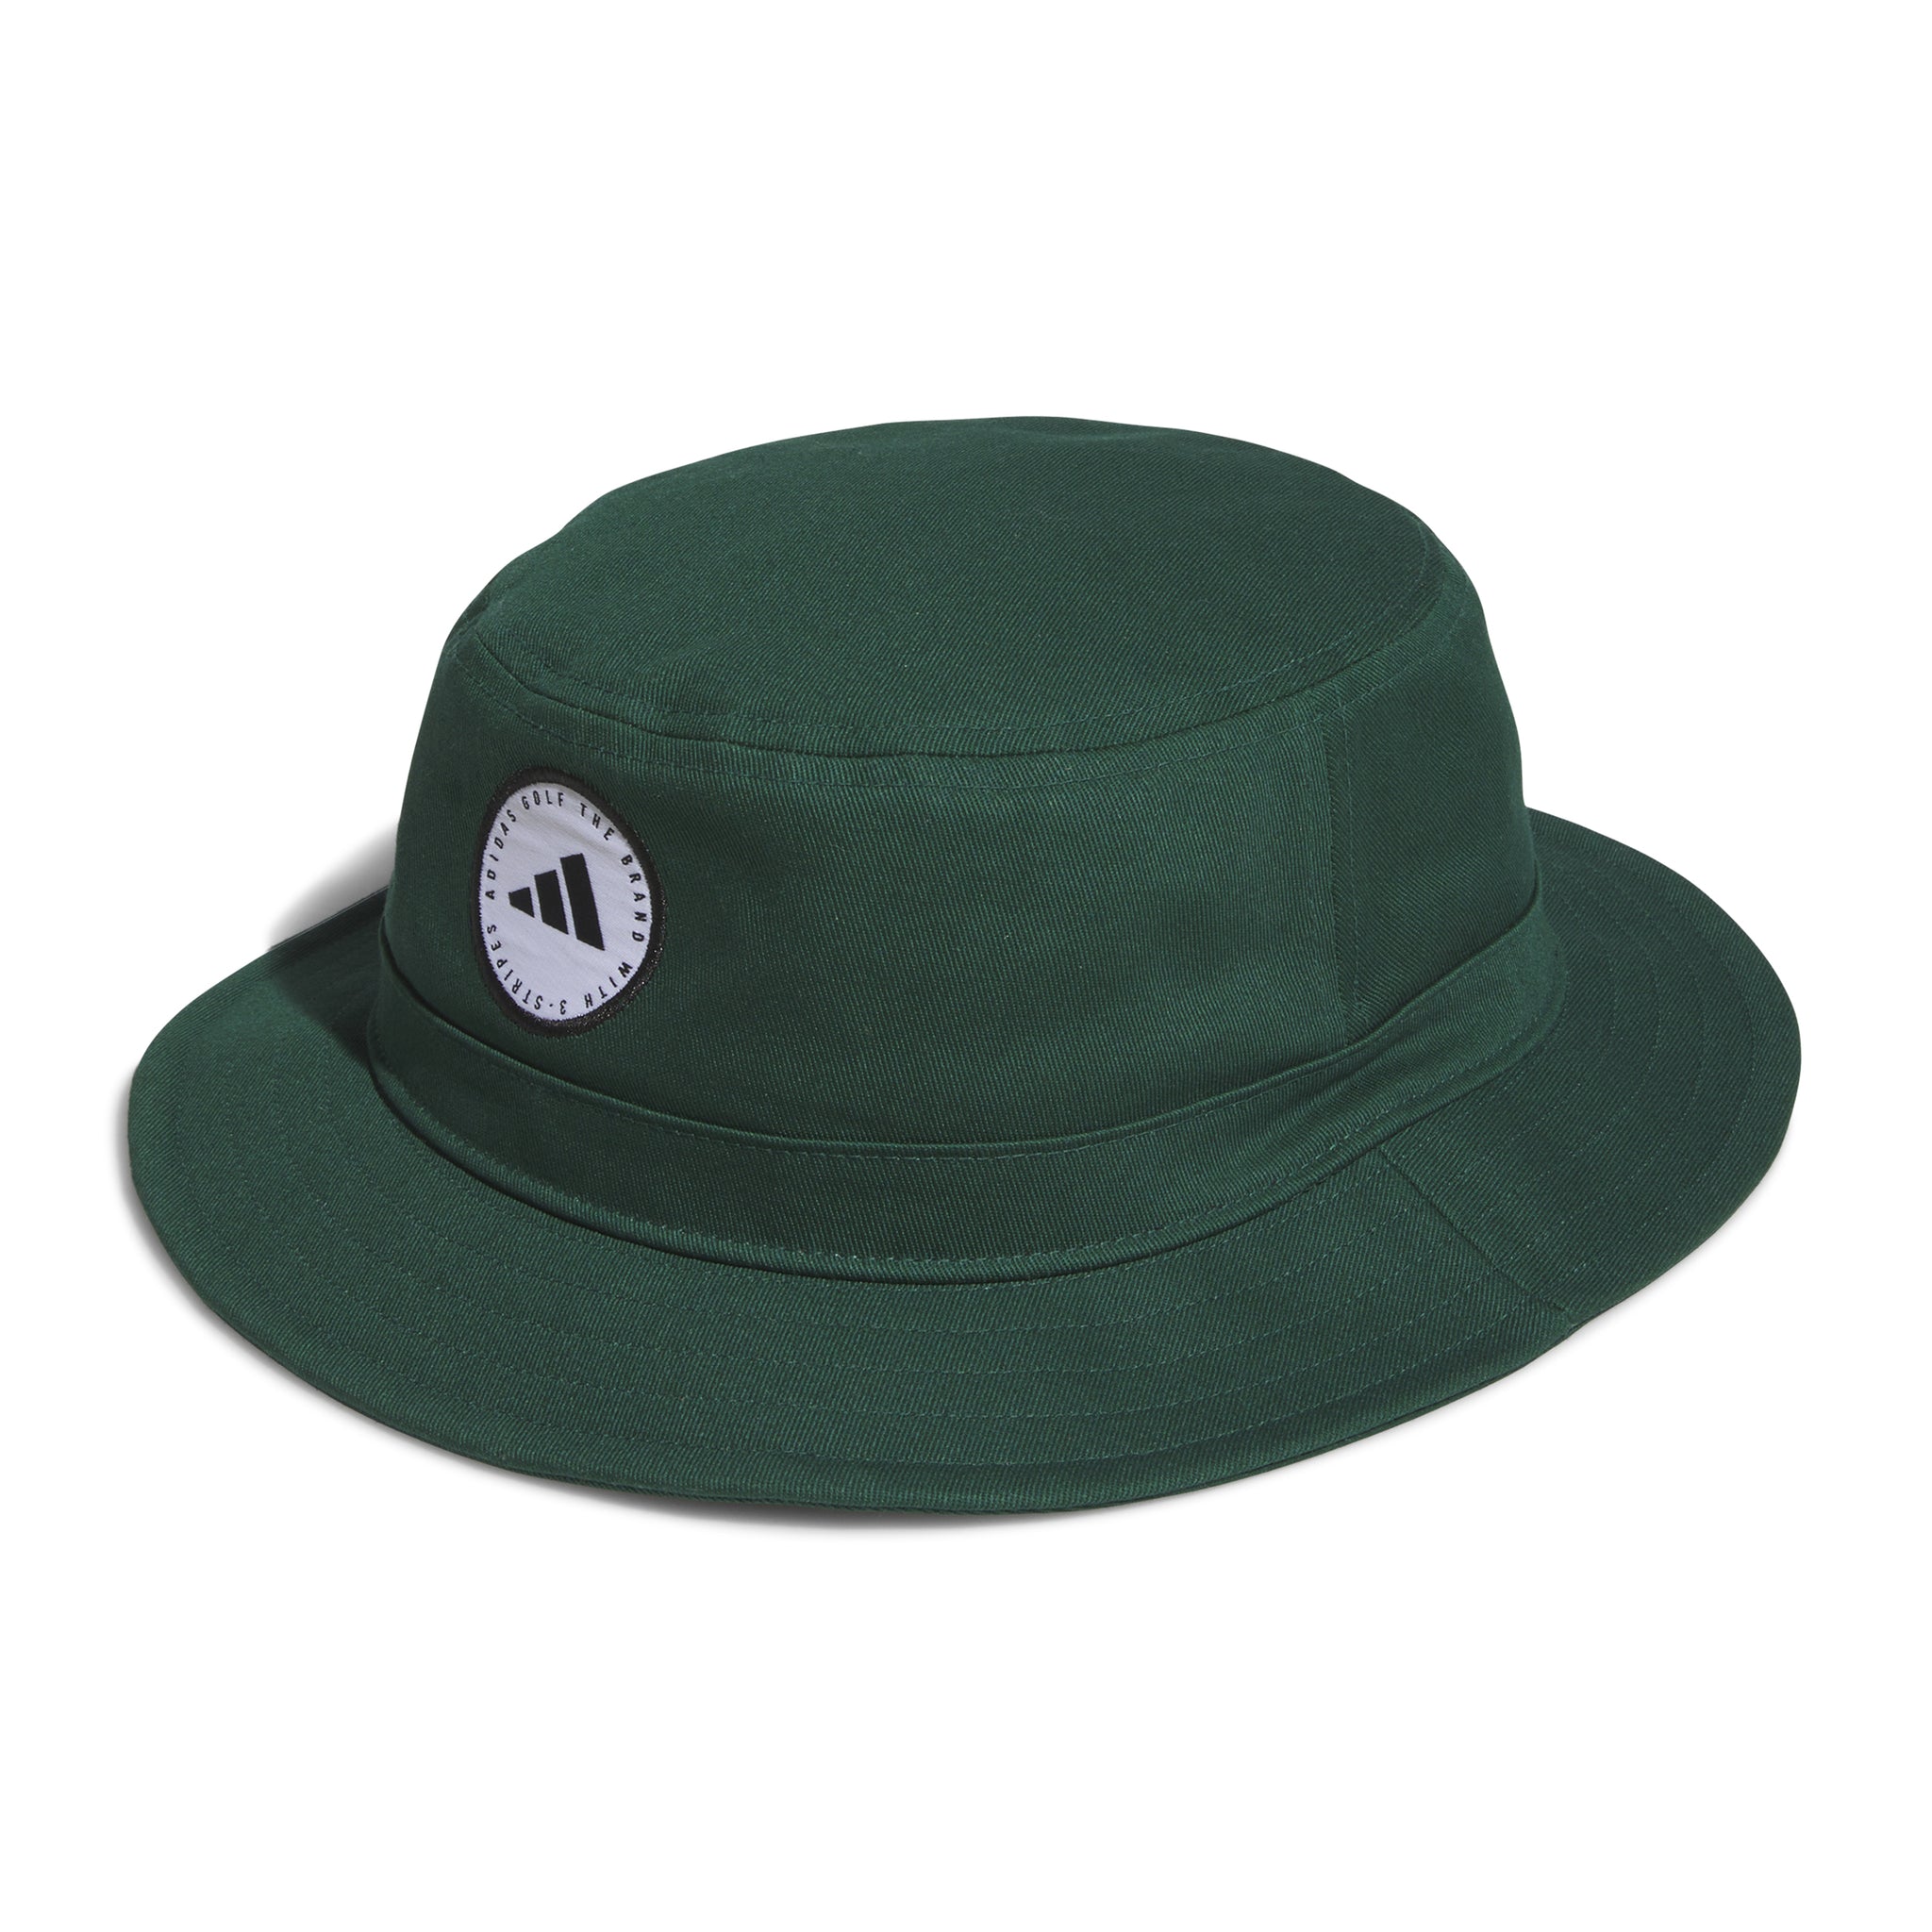 adidas-golf-cotton-bucket-hat-im9230-collegiate-green